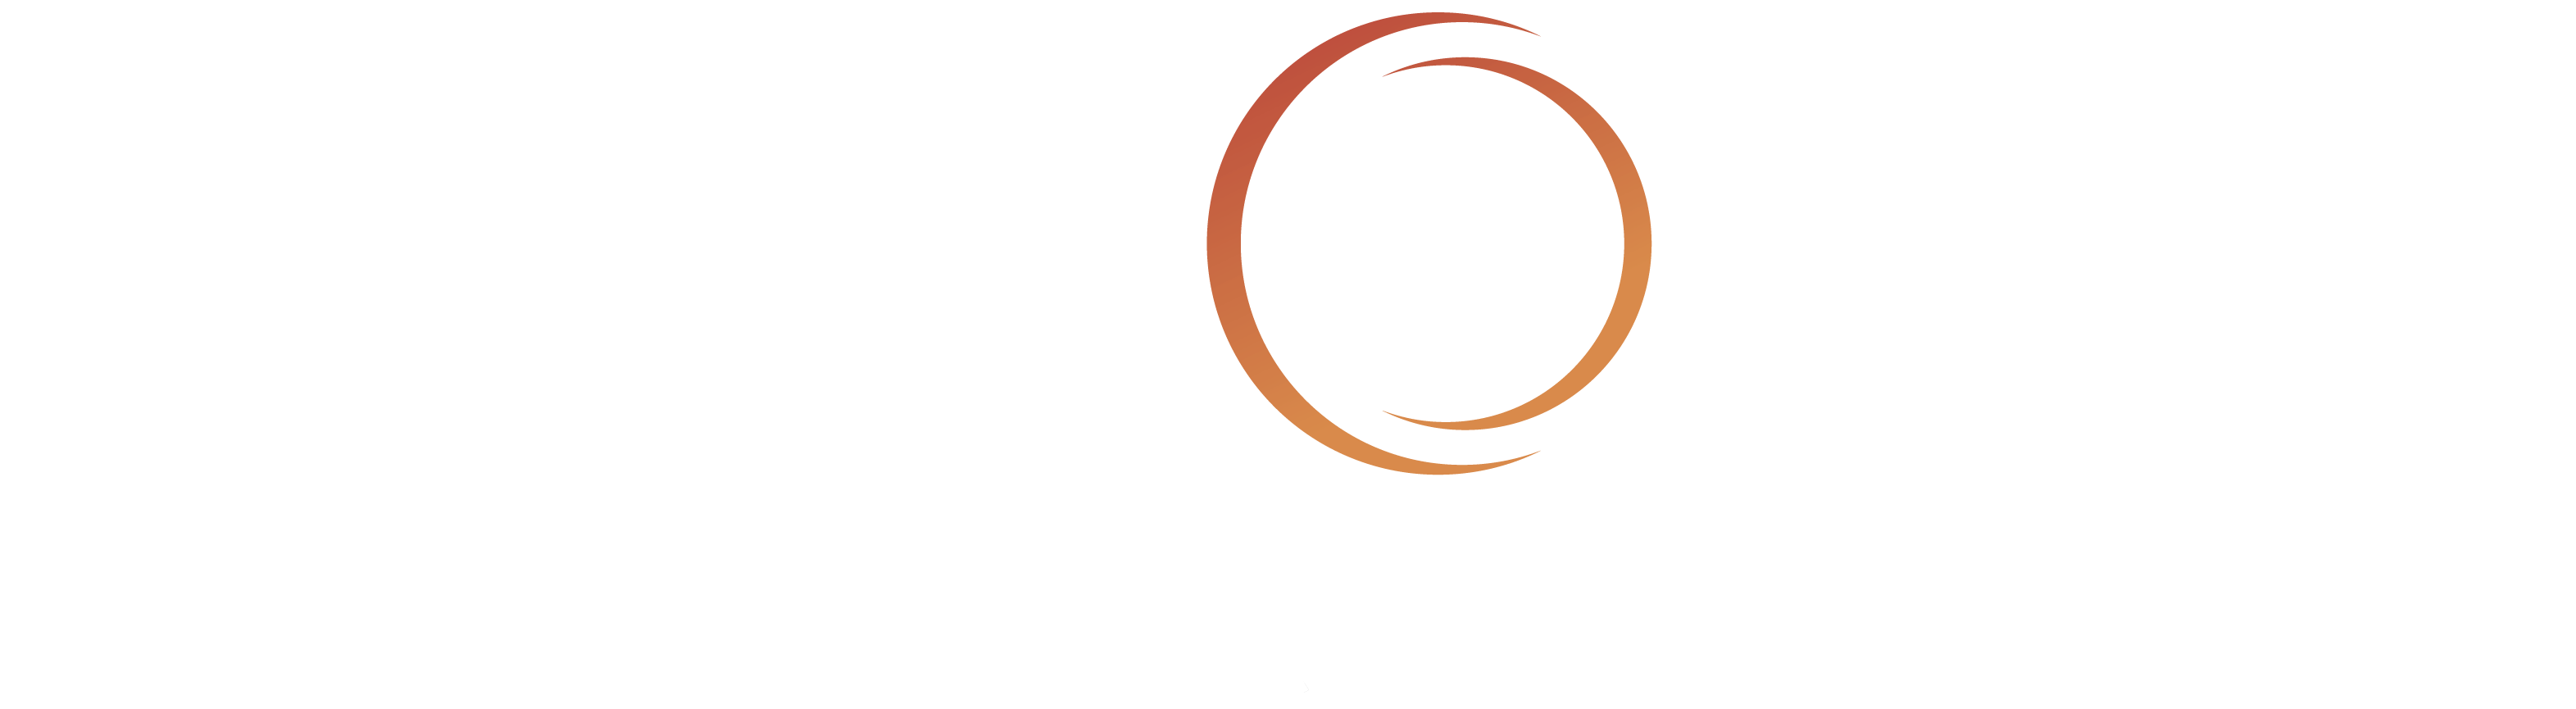 FairosRX Header Logo